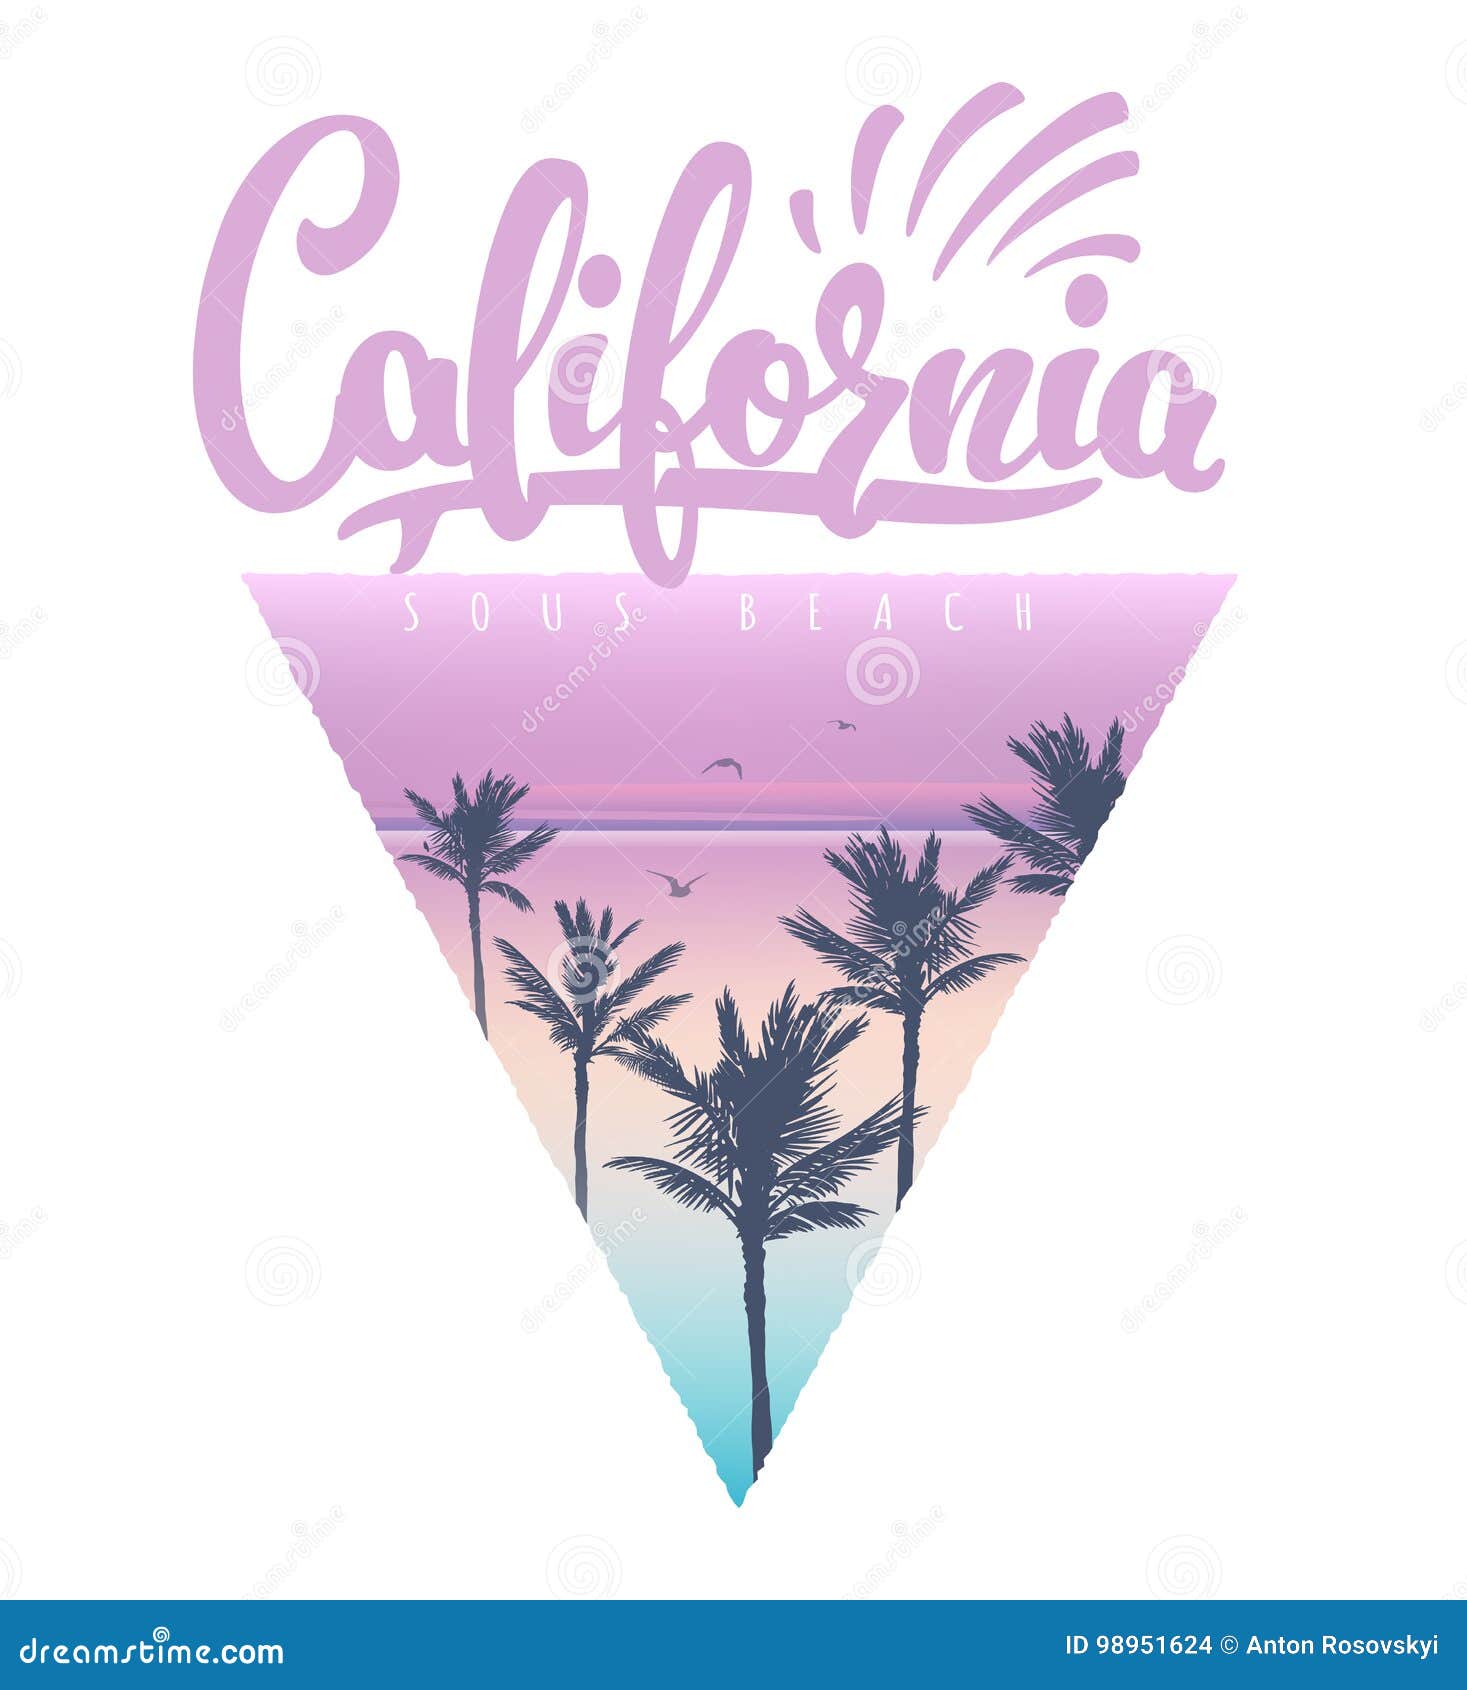 california beach t-shirt print